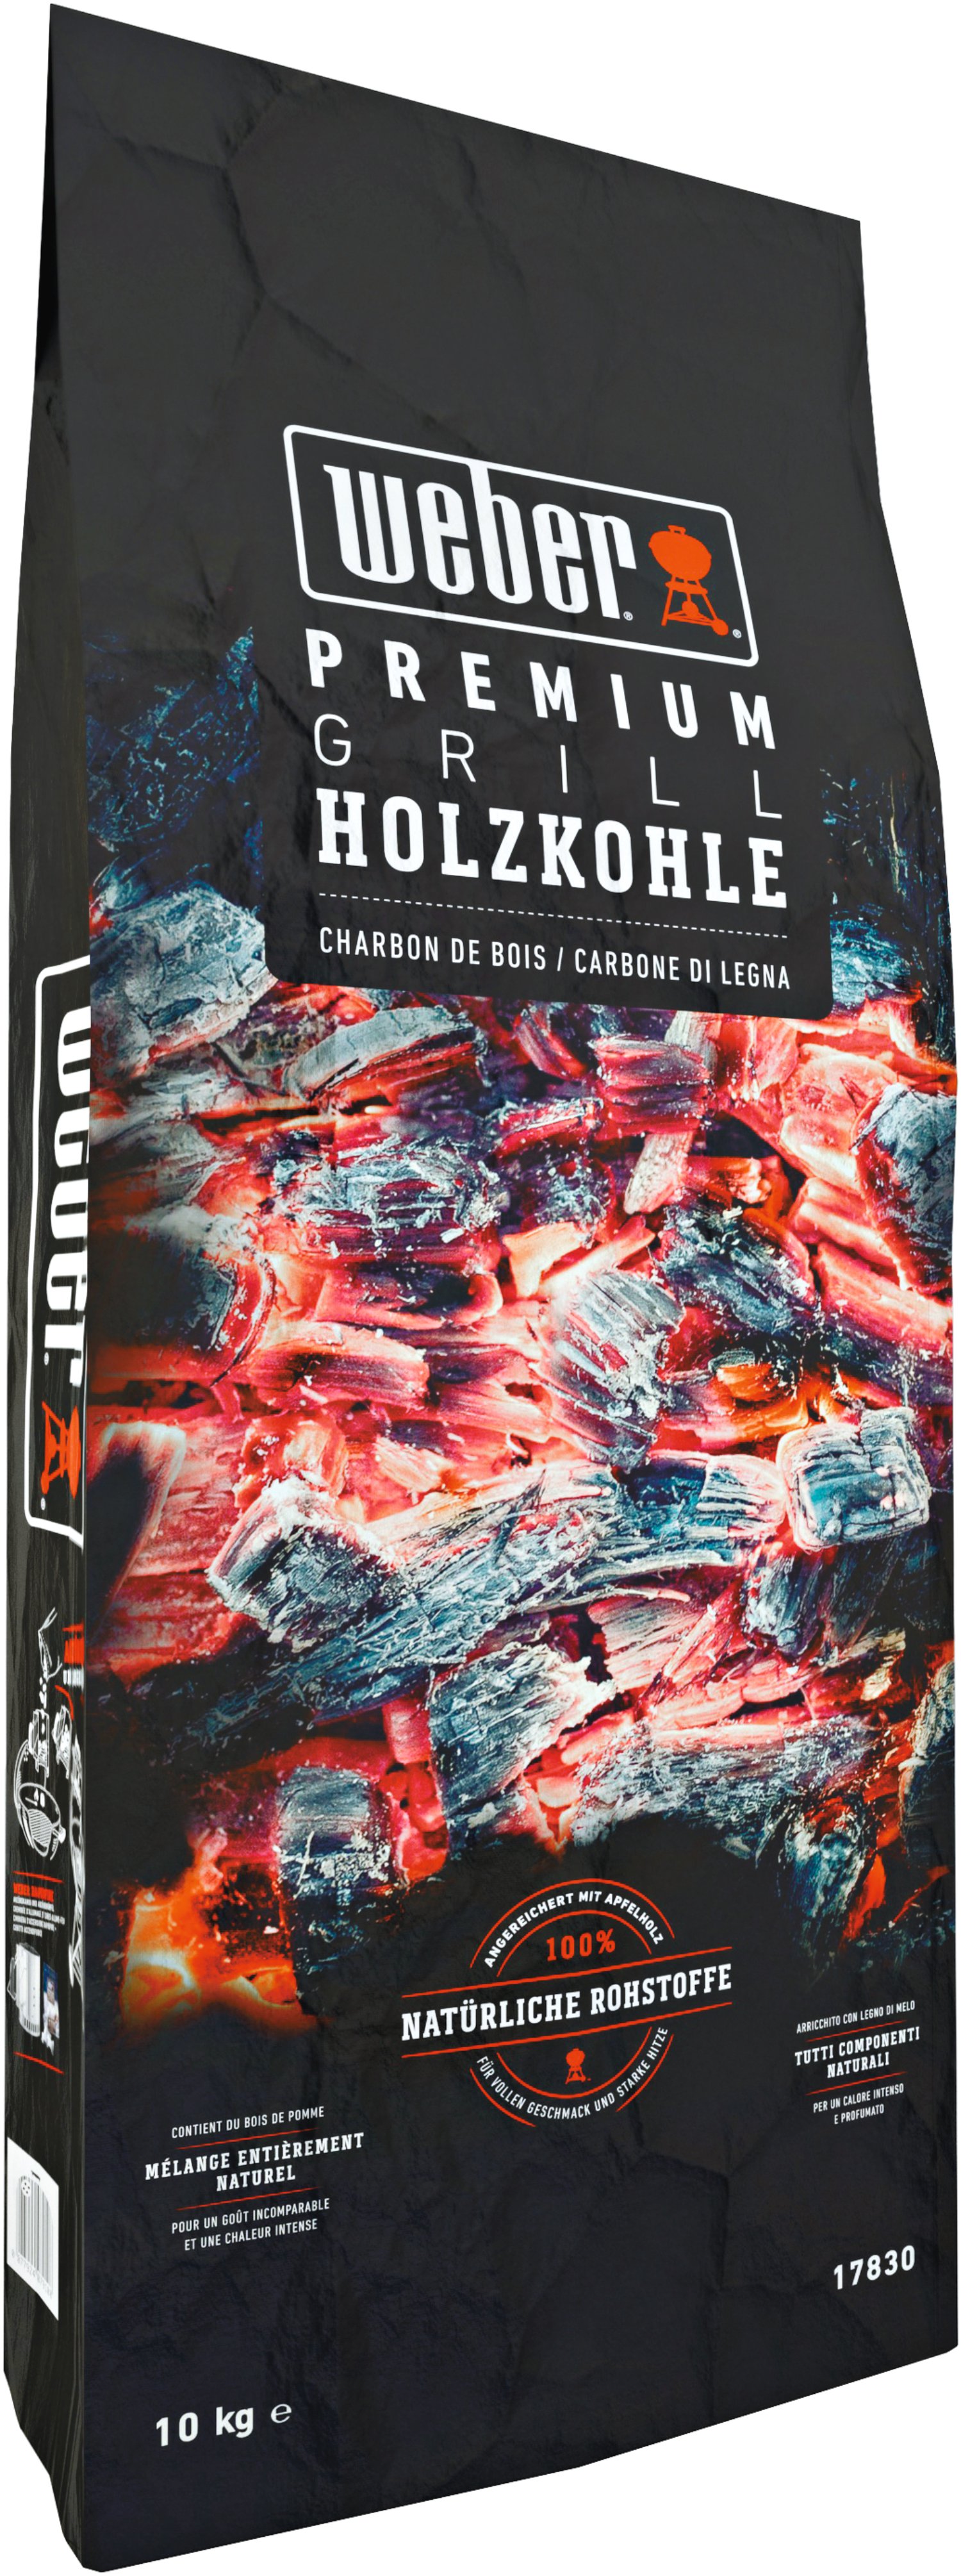 WEBER® Holzkohle Premium 10 kg